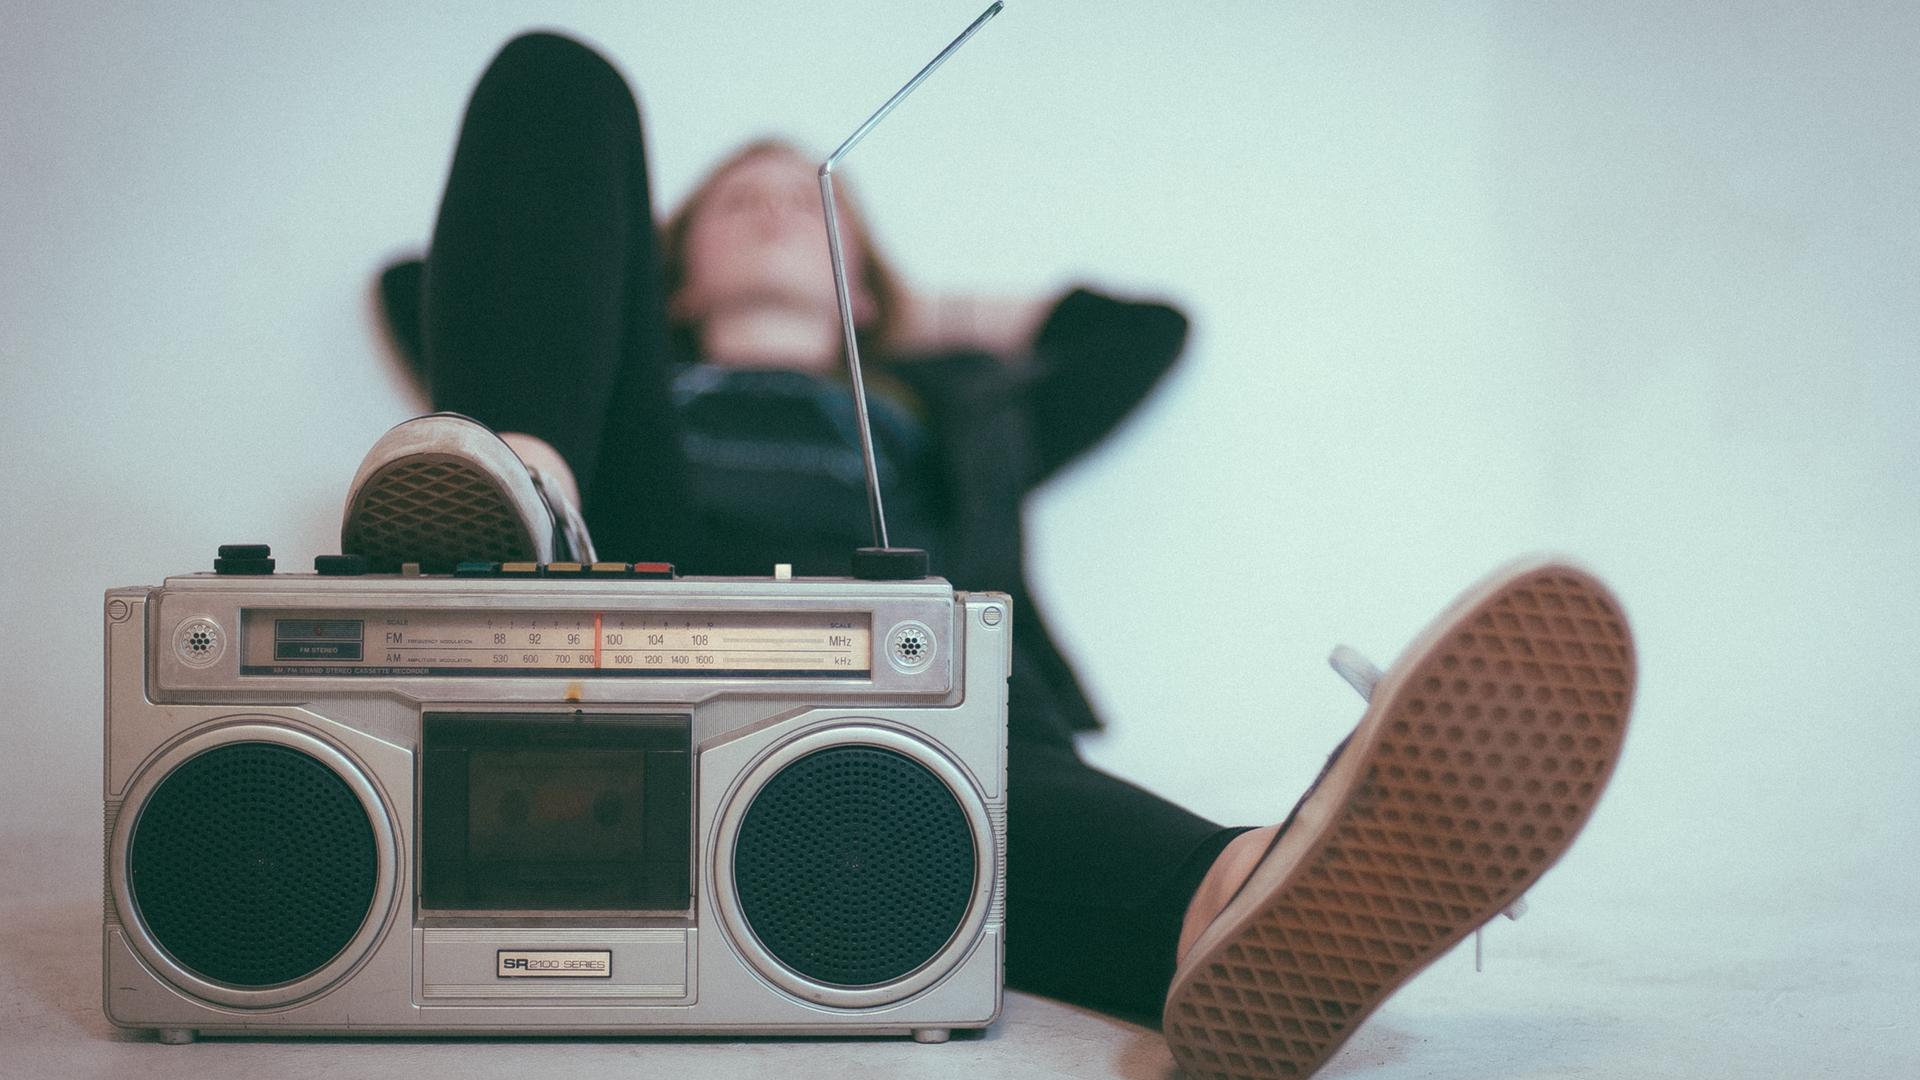 Eine Frau liegt mit einem angewinkelten Bein auf dem Boden, vor ihr steht ein altes Radiogerät.